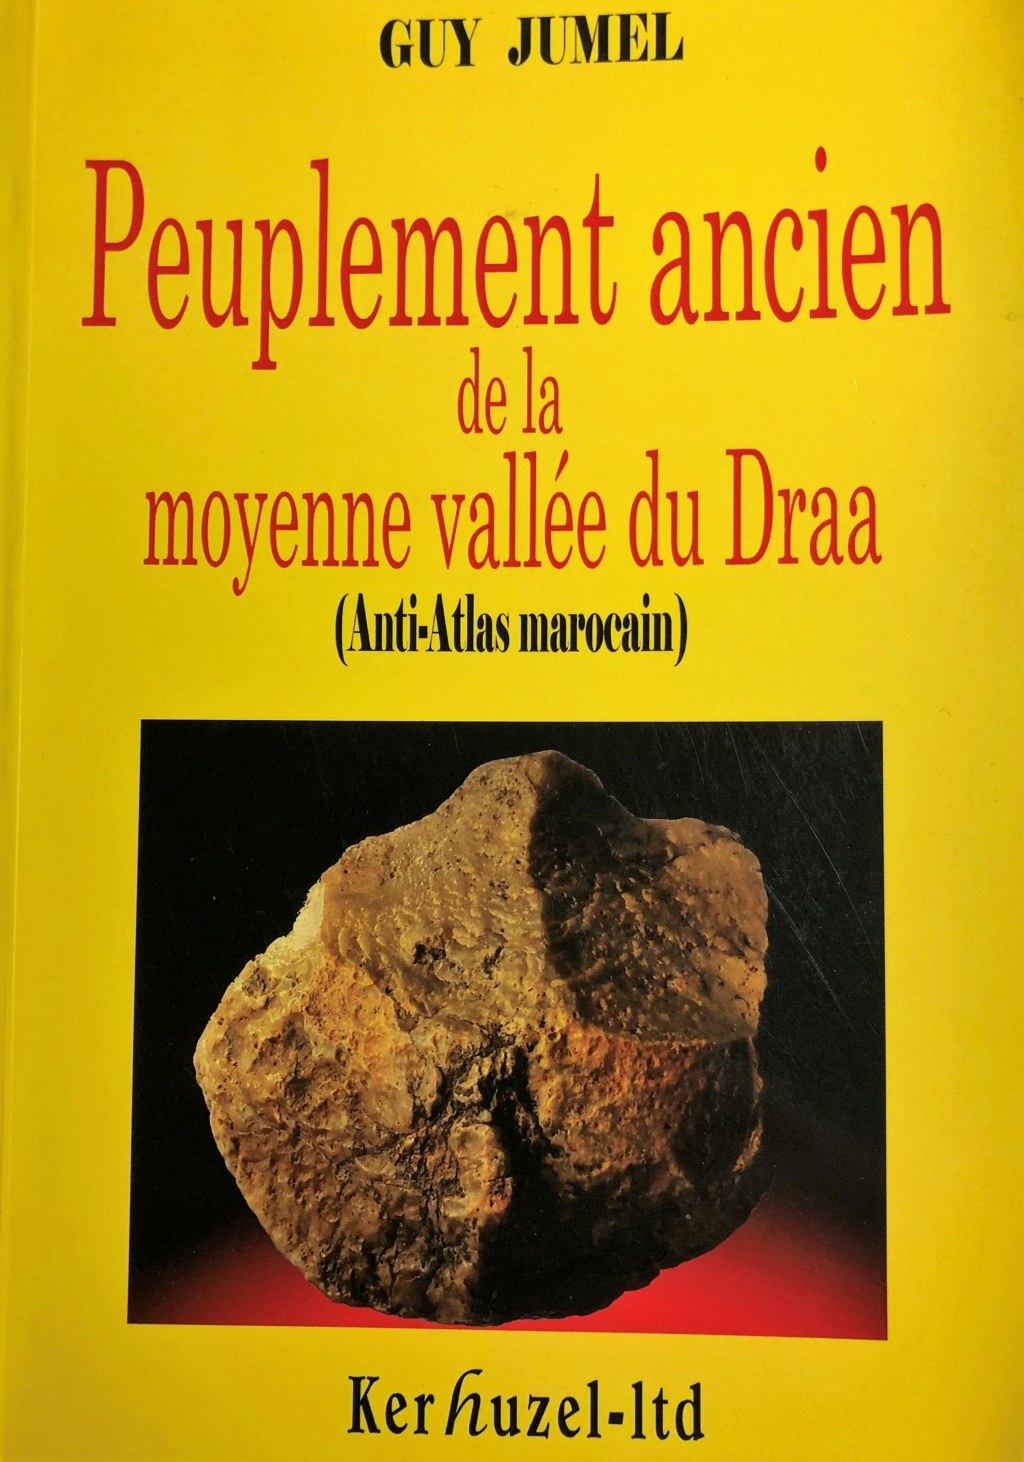 Archéologie et préhistoire au Maroc  Img_9912